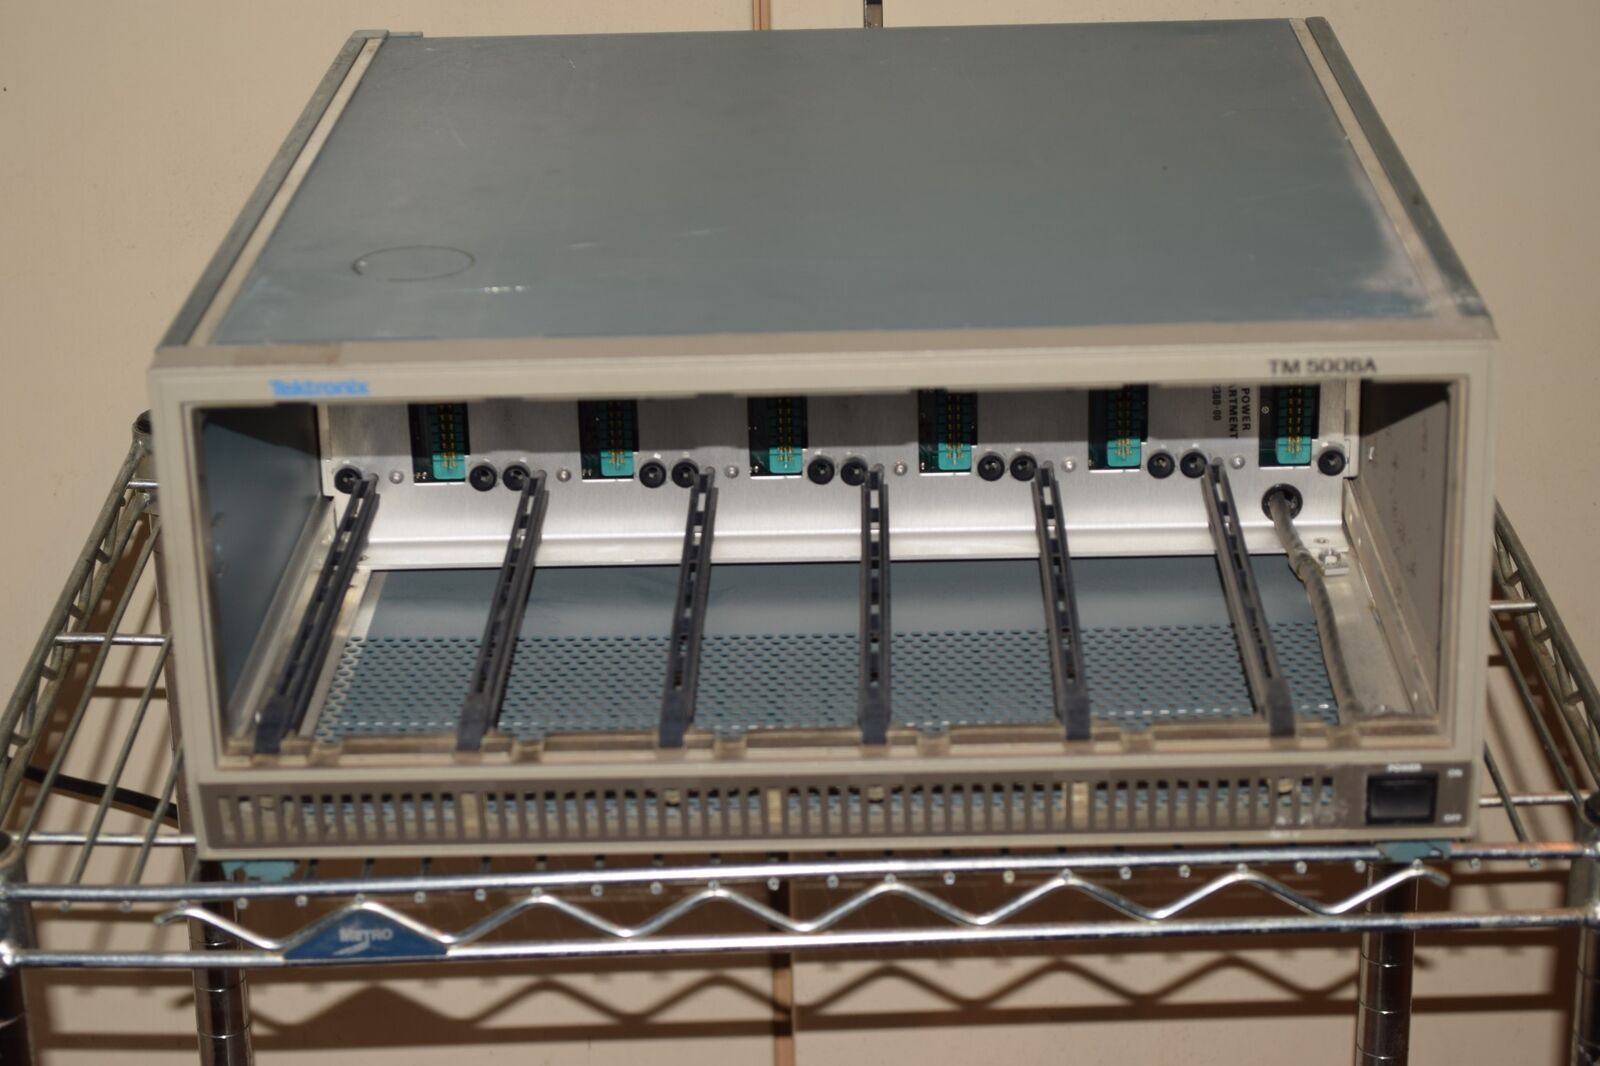 Tektronix TM5006A Power Module Mainframe (PK28)